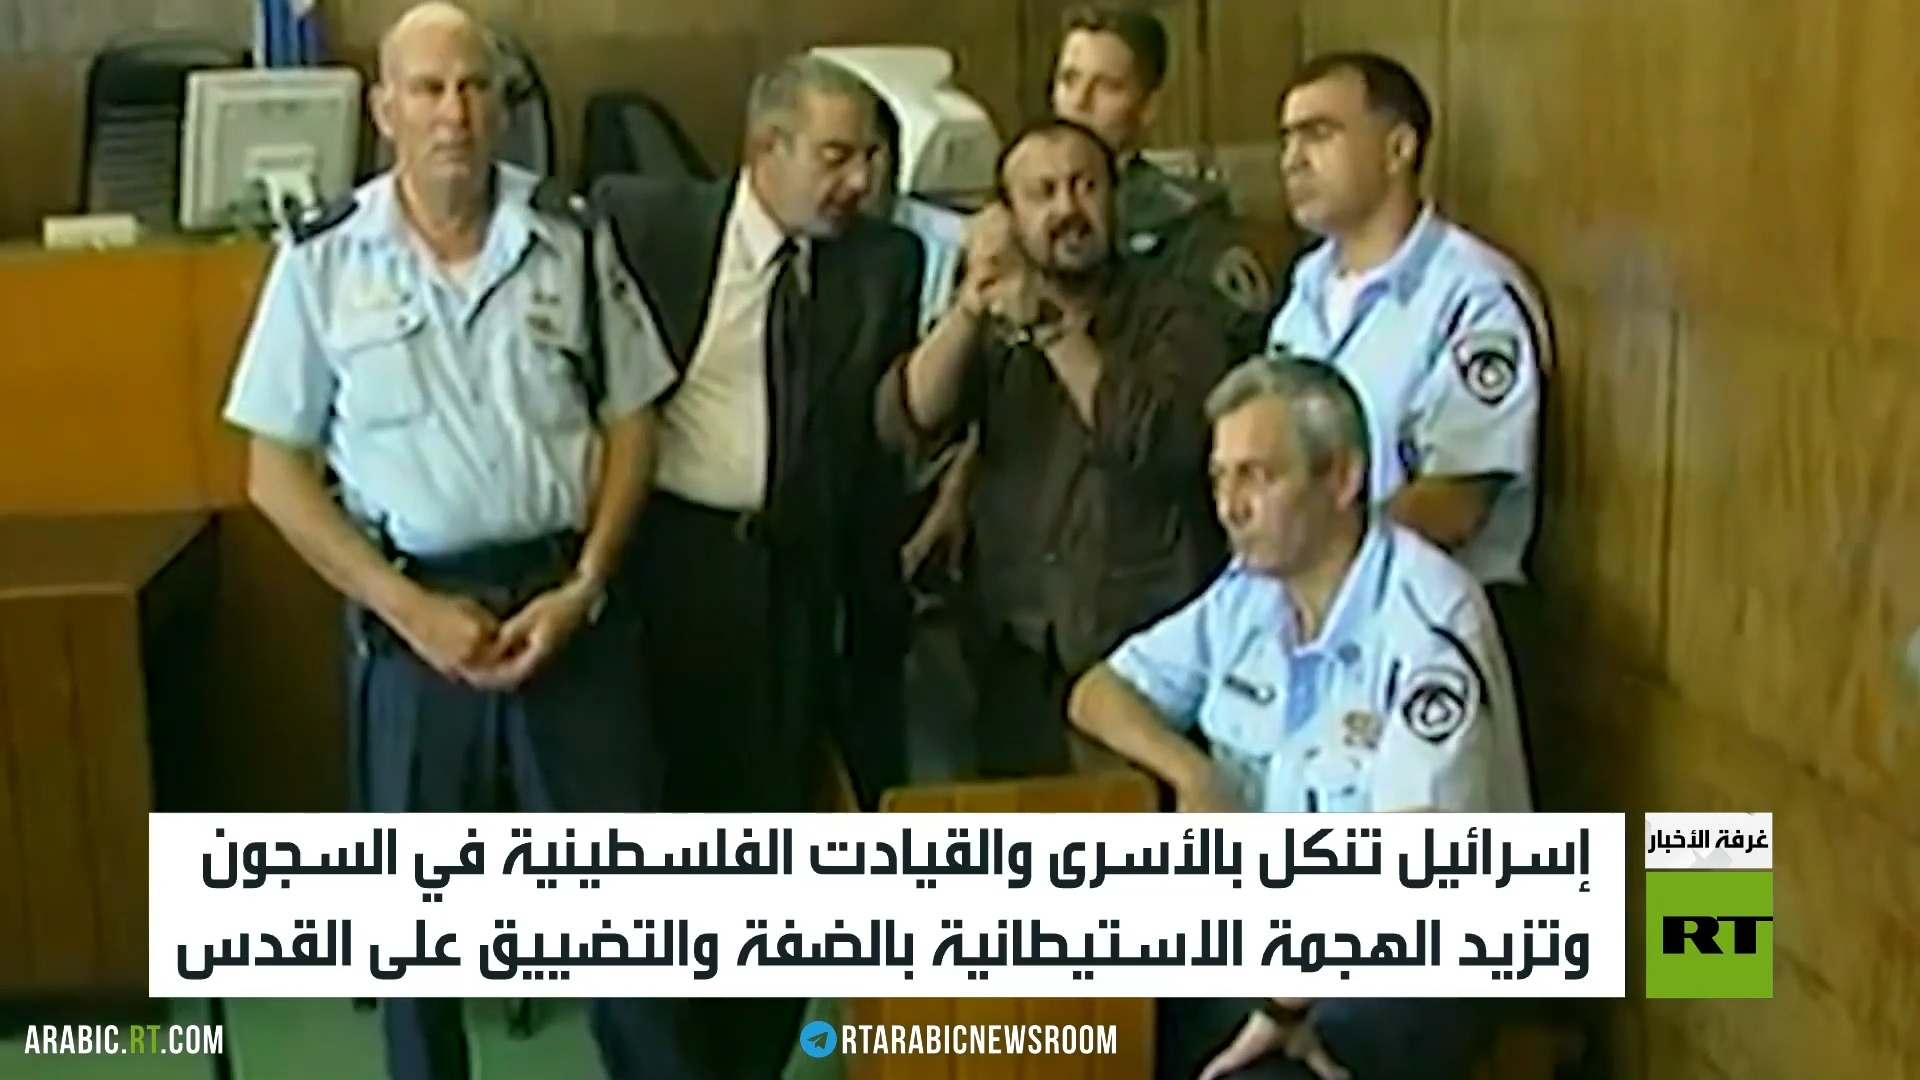 مروان البرغوثي ضحية لتحريض يمين إسرائيل